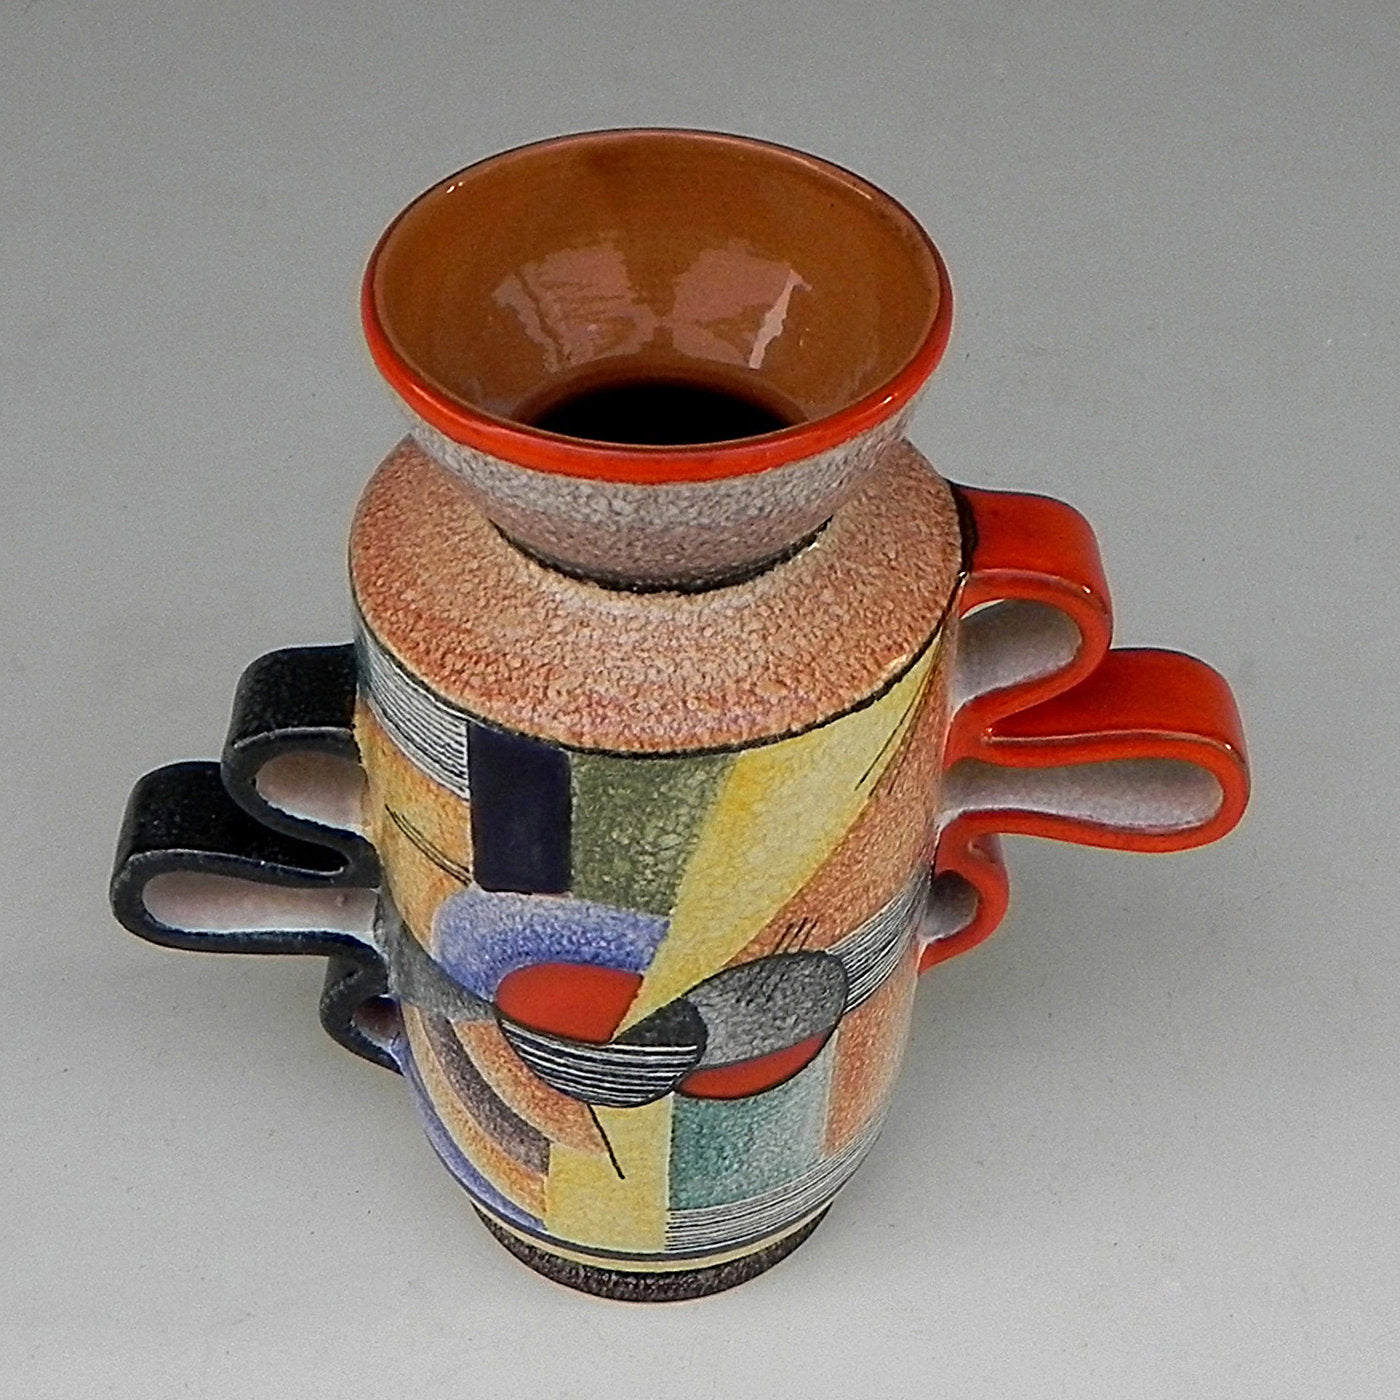 Snello Futurista Ceramic Vase - Alternative view 4